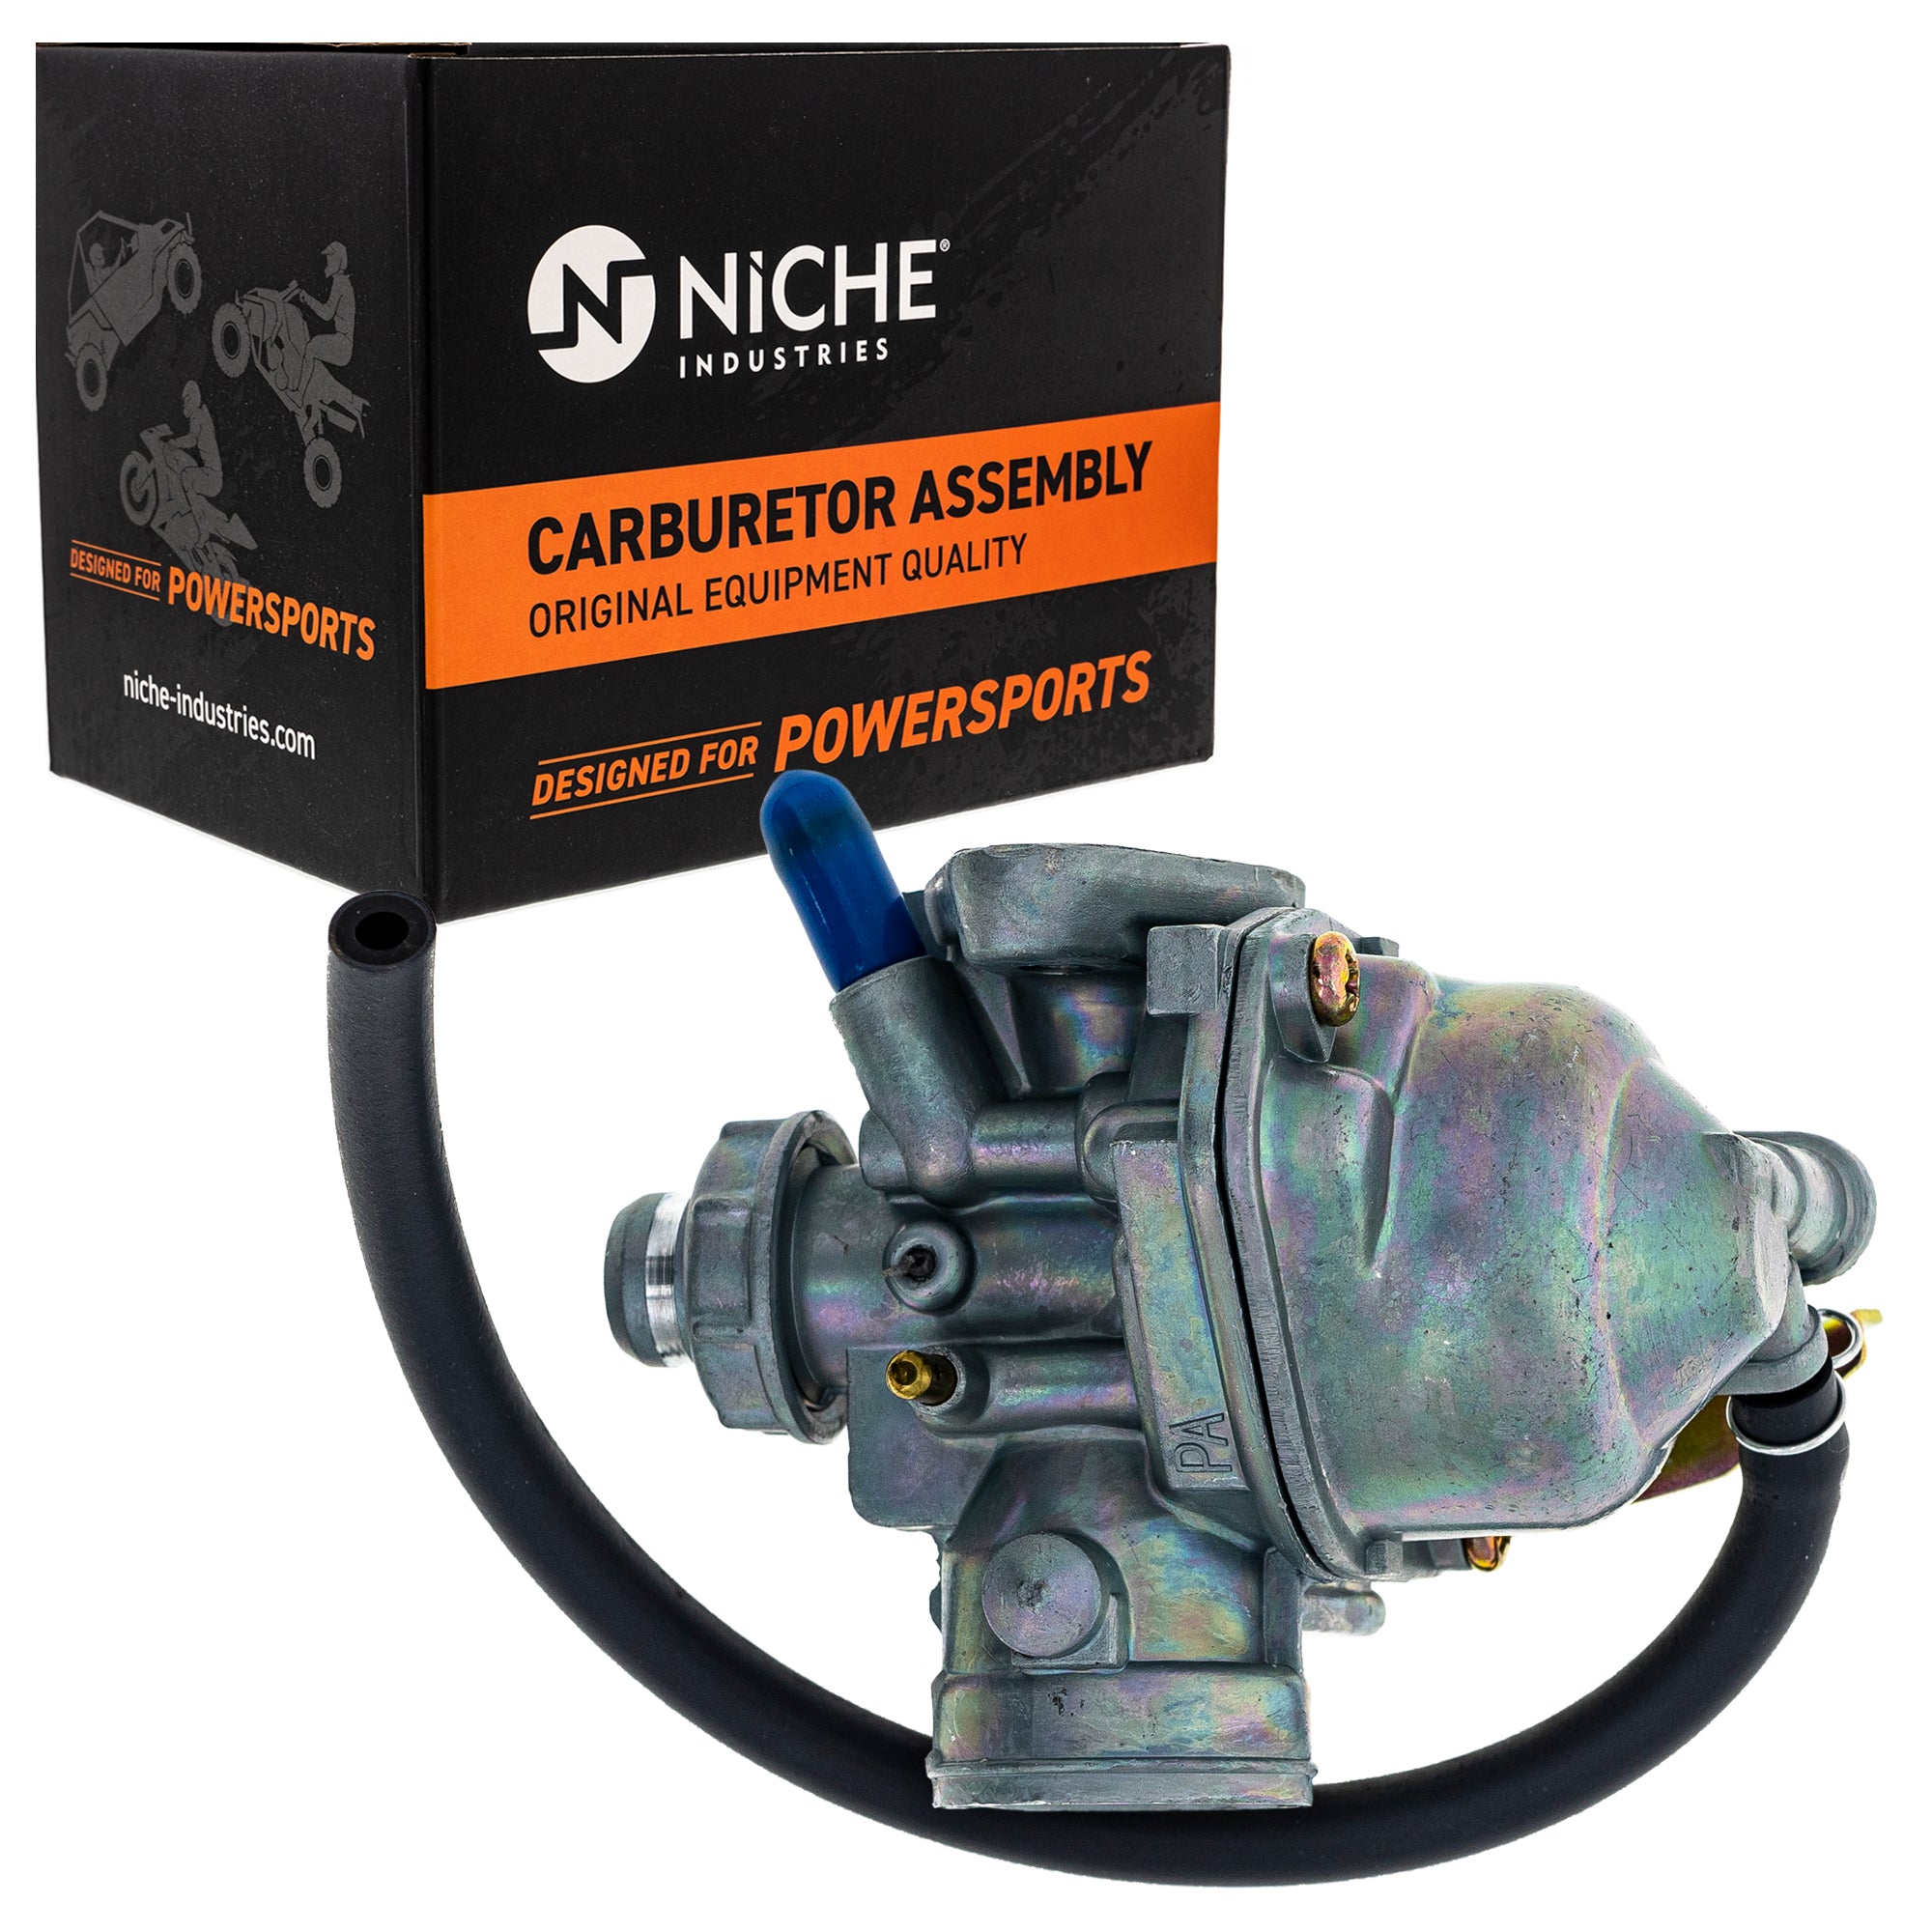 NICHE Carburetor Assembly 16100-GEL-702 16100-GEL-701